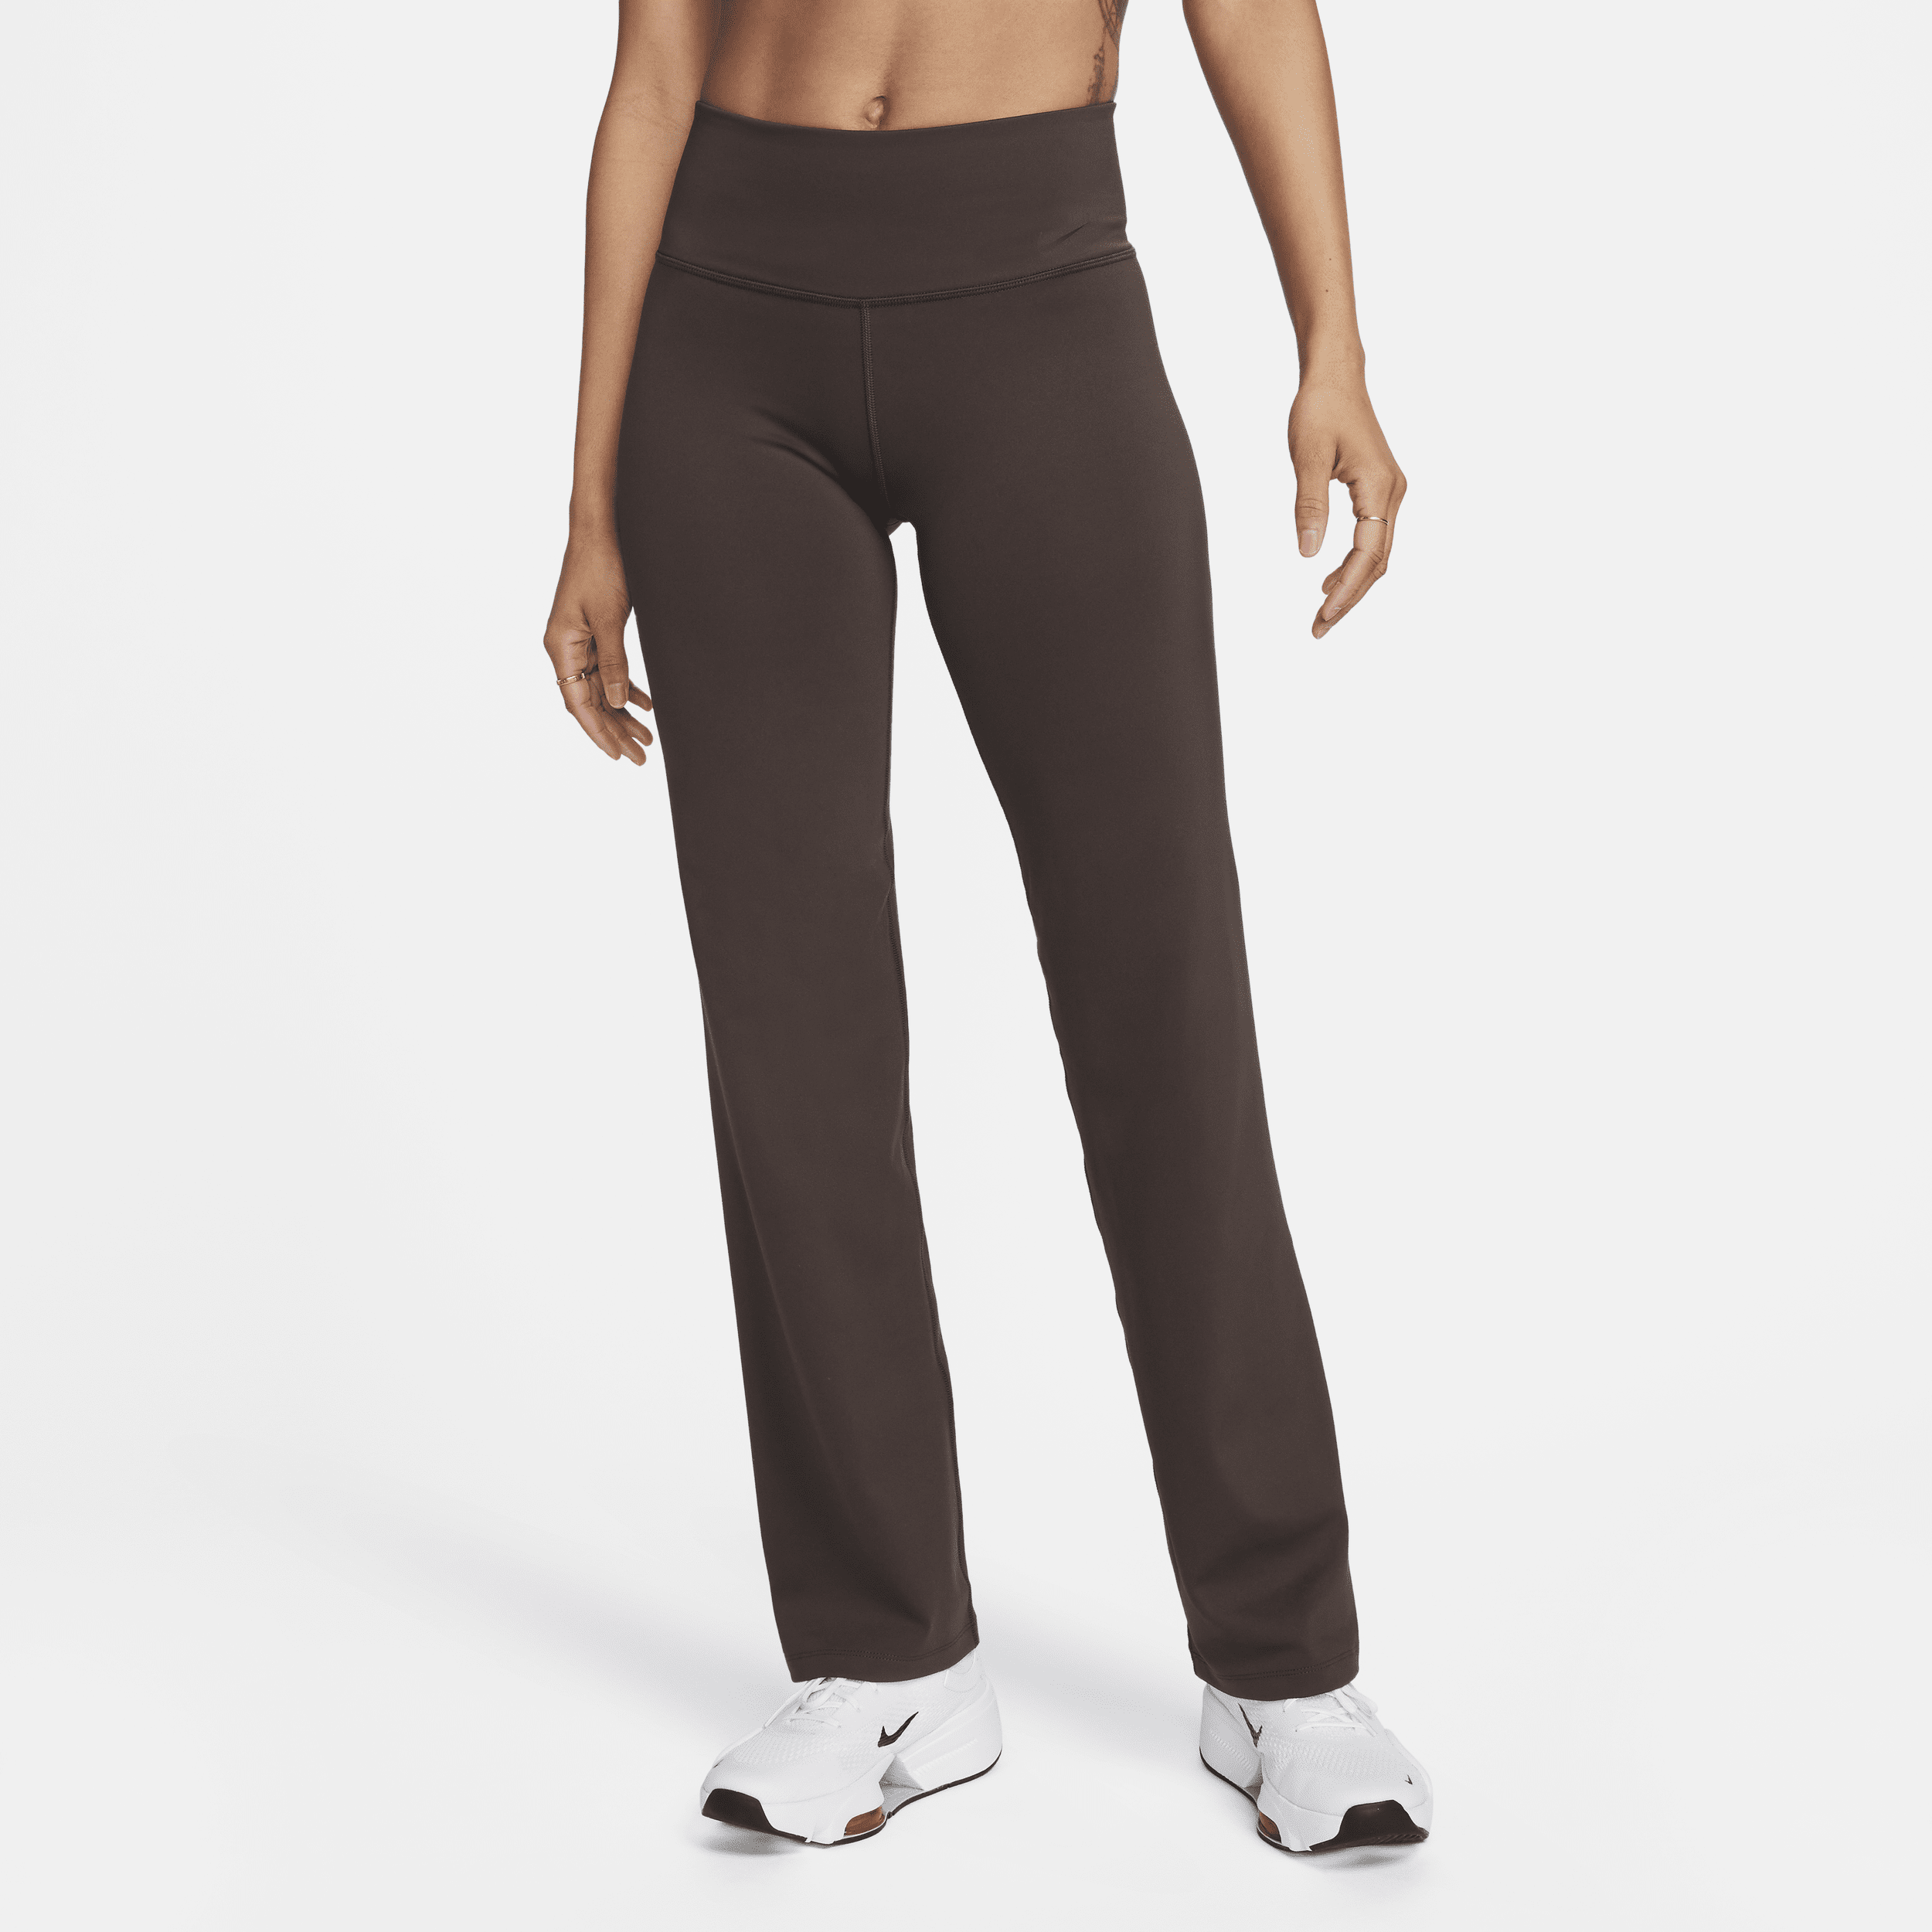 Nike Power Pantalón de entrenamiento - Mujer - Marrón